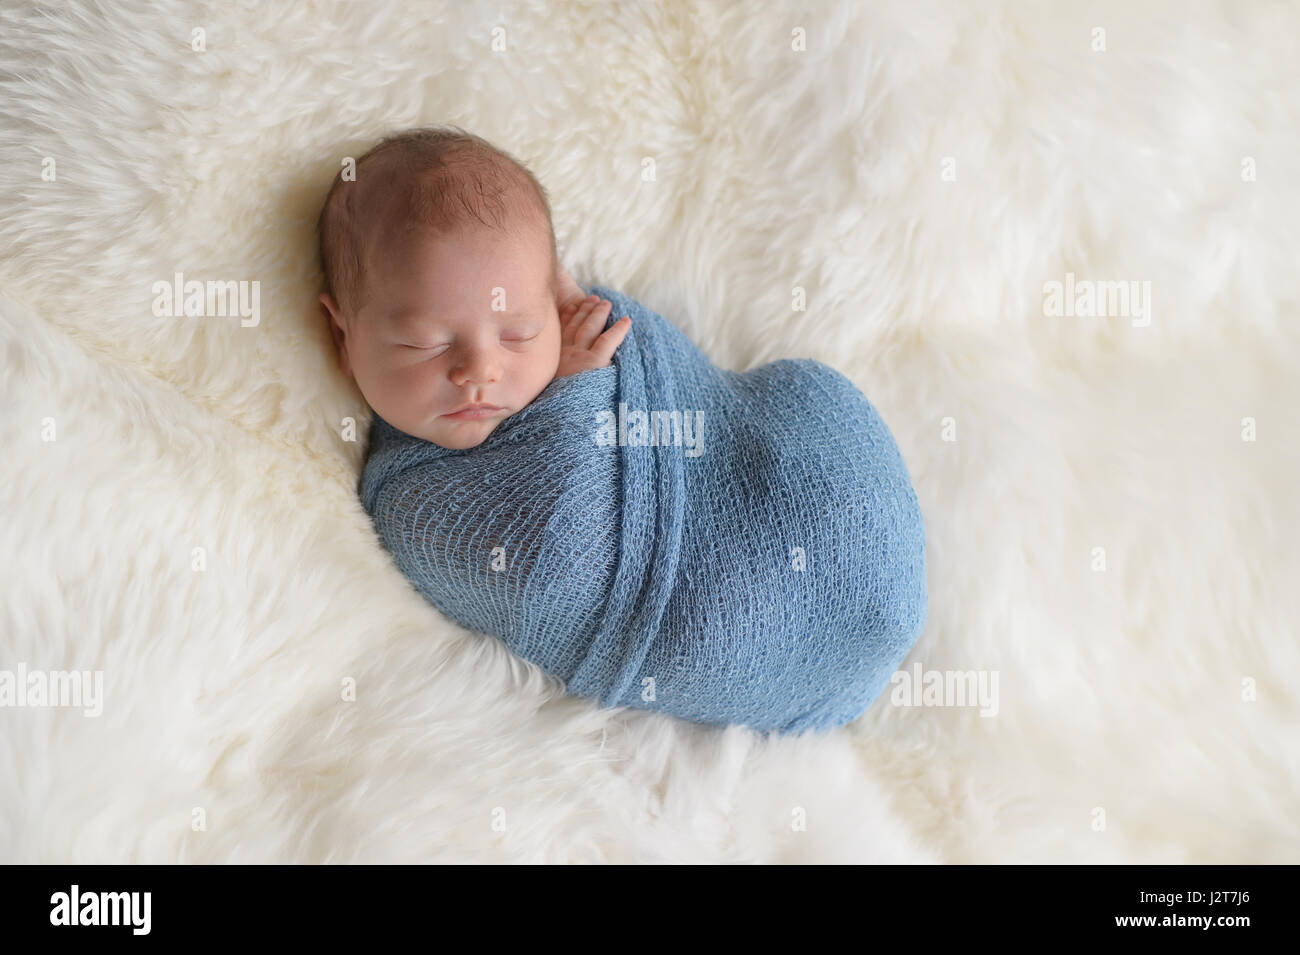 Dormir, neuf jours vieux garçon nouveau-né emmailloté dans un emballage bleu clair. Tourné en studio sur un tapis en peau de mouton blanc. Banque D'Images